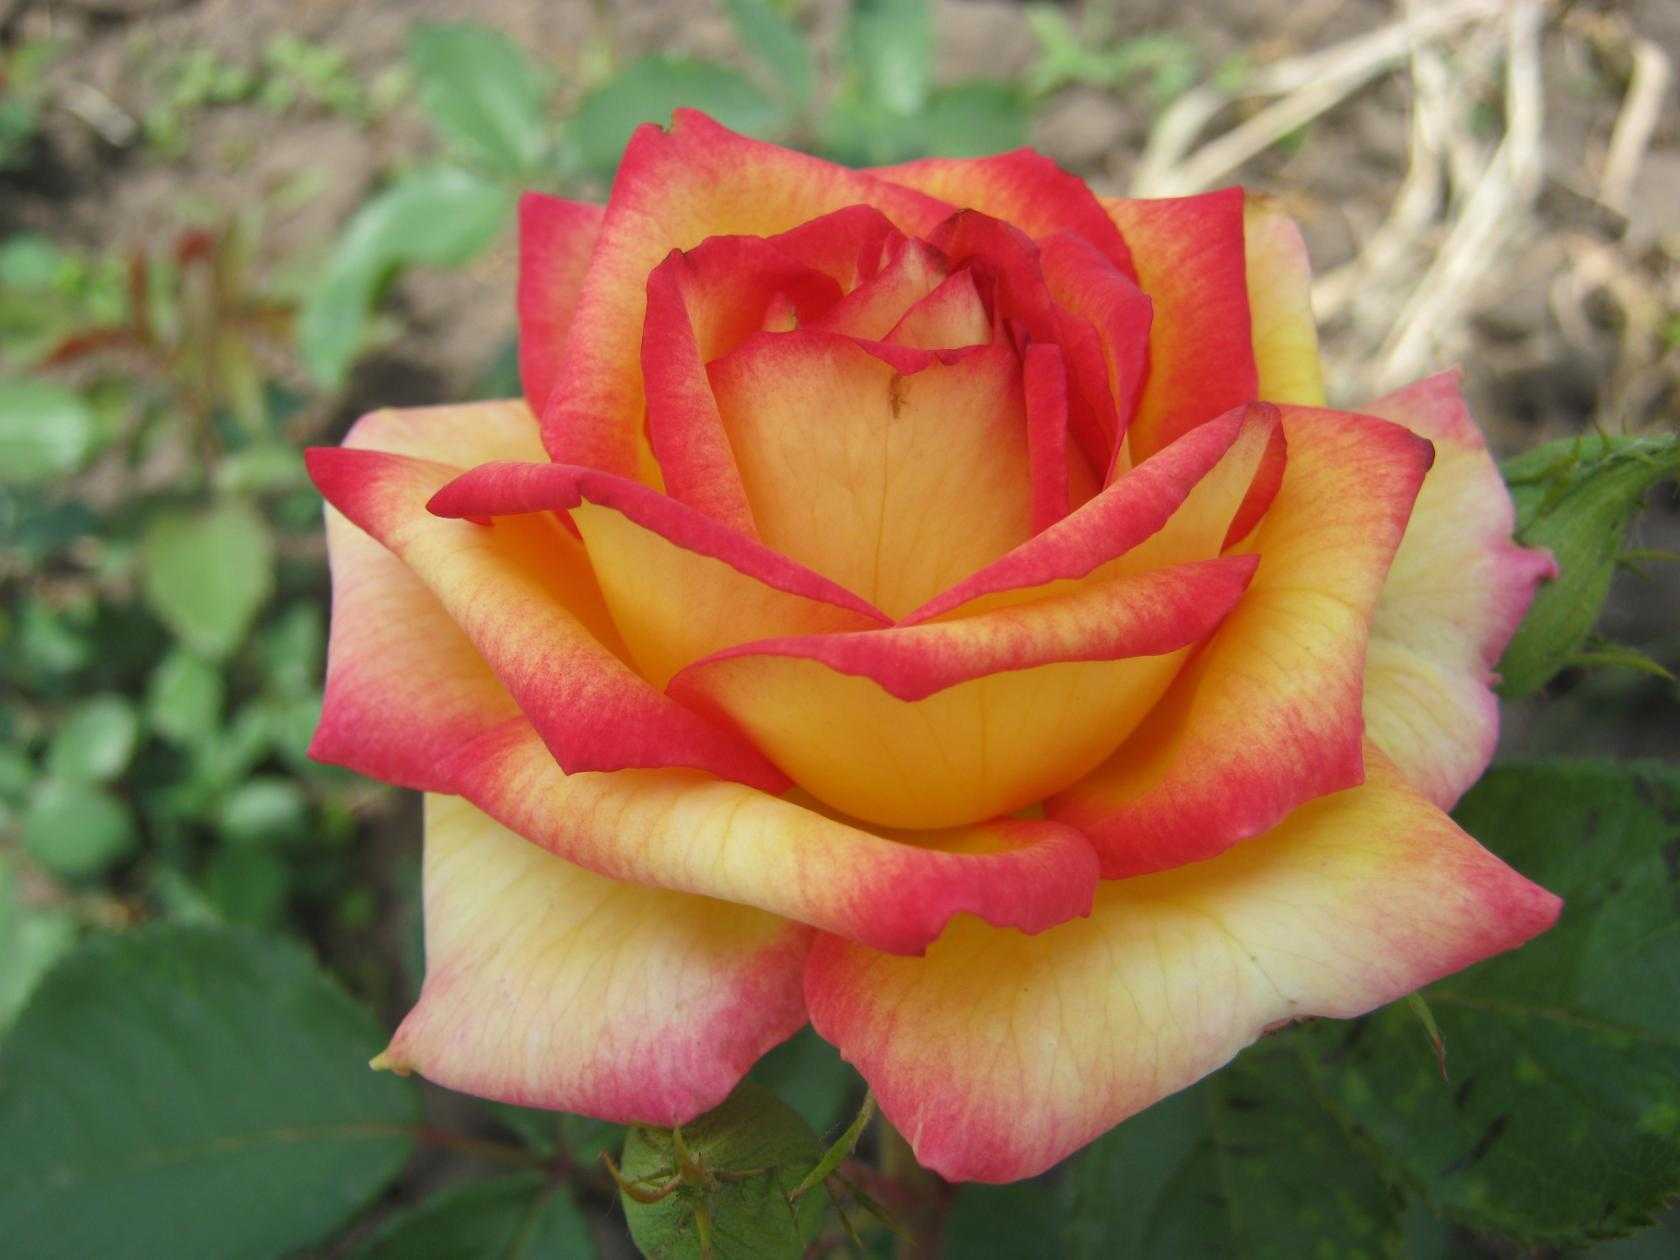 Кустовые розы (50 фото): белые, красные, розовые, двуцветные, мелкоцветковые сорта, опоры для кустов, правила ухода, заболевания, выращивание, размножение, обрезка, в декоре сада